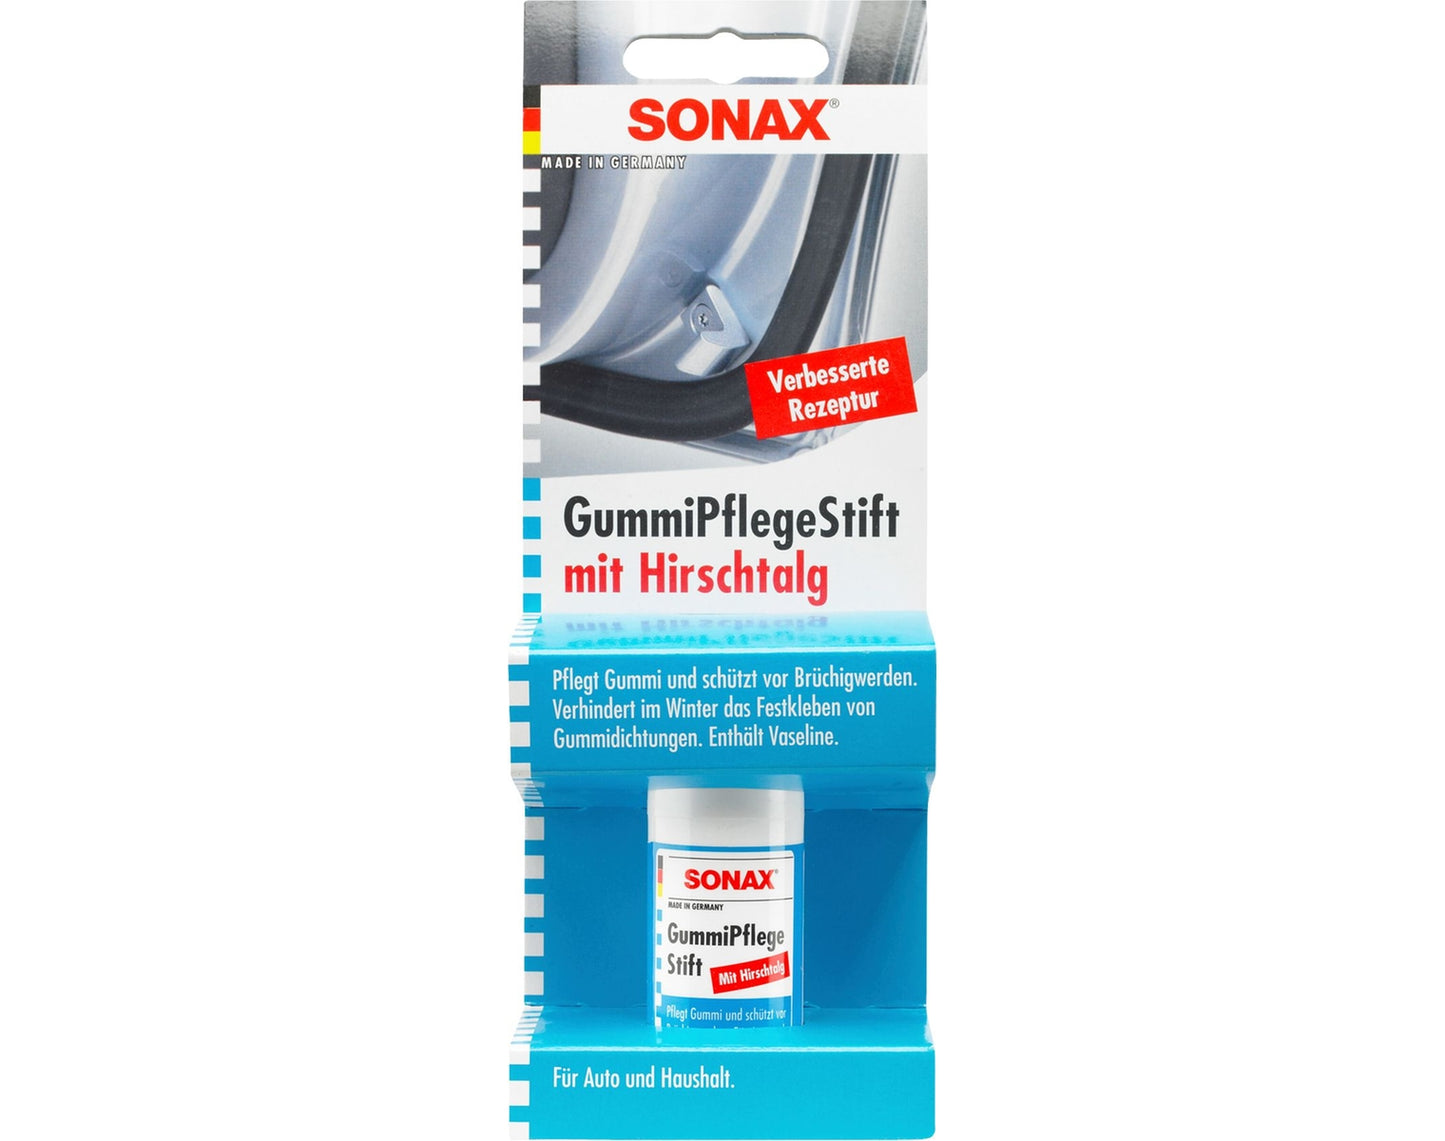 Sonax GummiPflegeStift mit Hirschtalg (20 g)